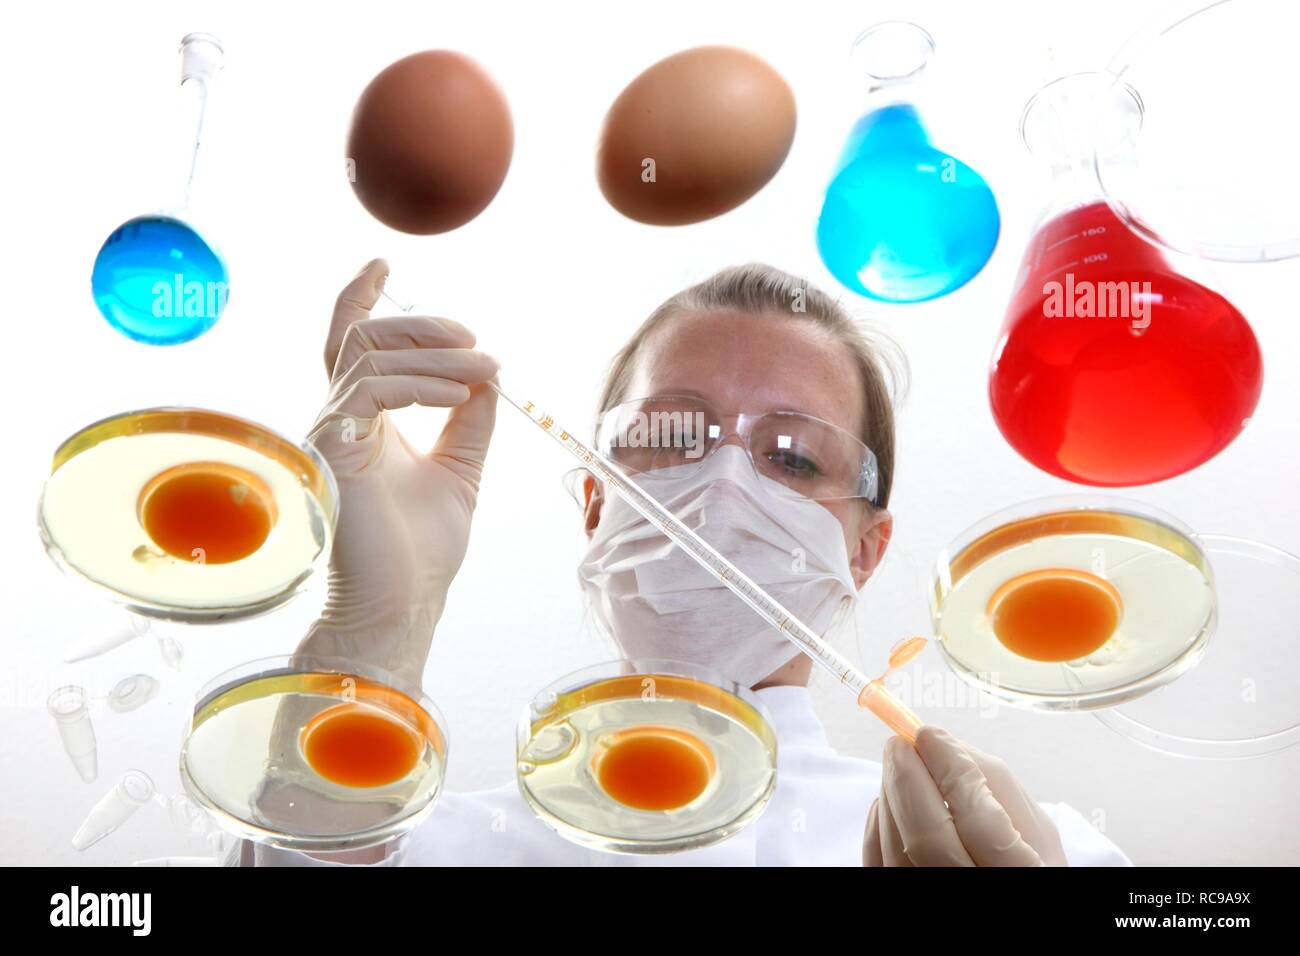 Essen Prüfung, Labor, Techniker, untersuchen Hühnereier und bereitet sie für Tests für die Exposition gegenüber Bakterien, Keime oder Stockfoto